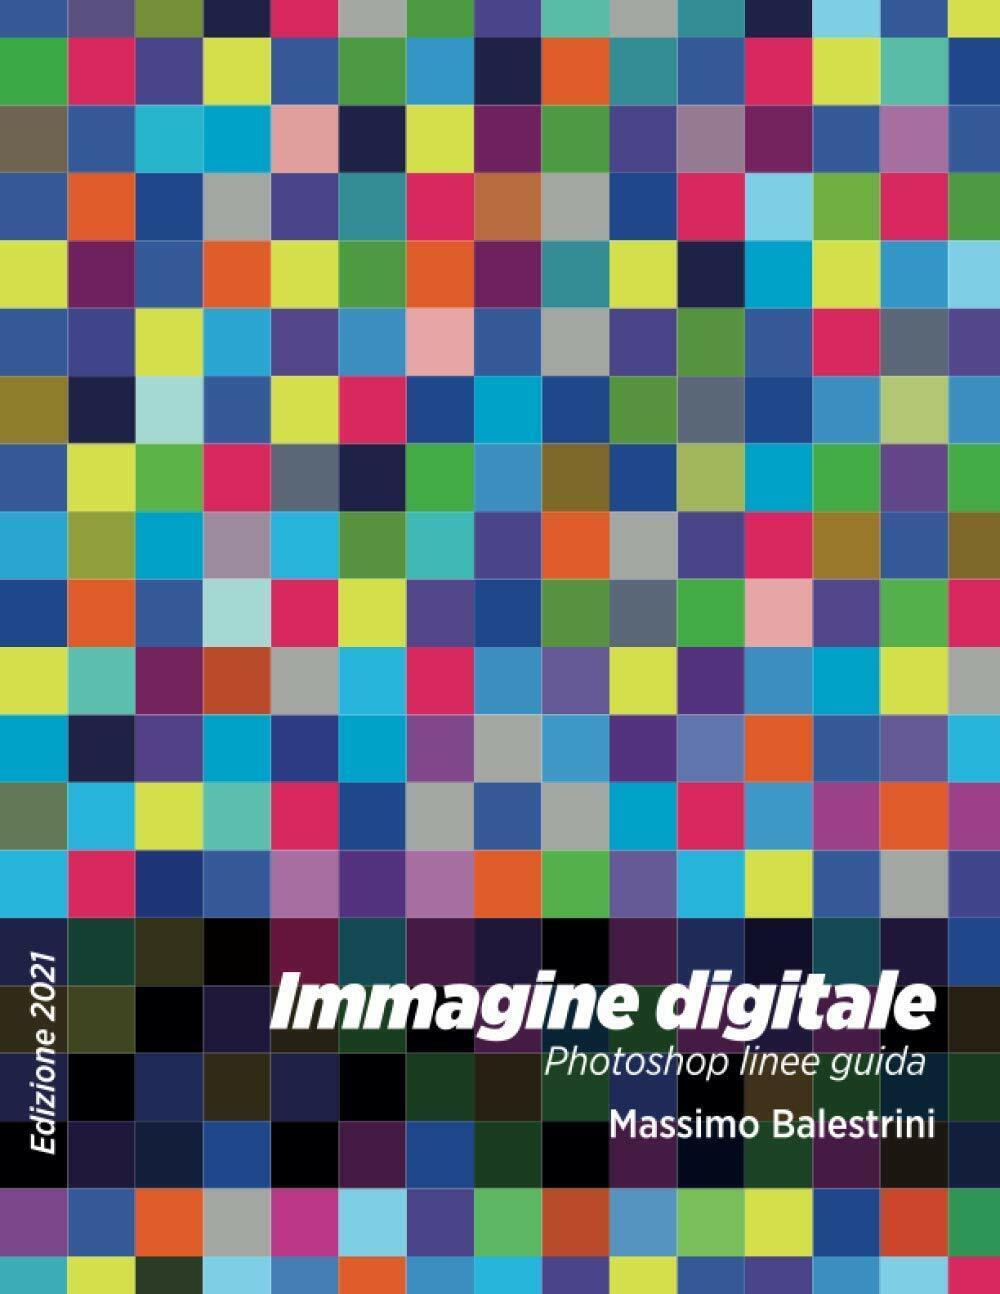 Immagine Digitale Photoshop Linee Guida di Massimo Balestrini,  2020,  Indipende